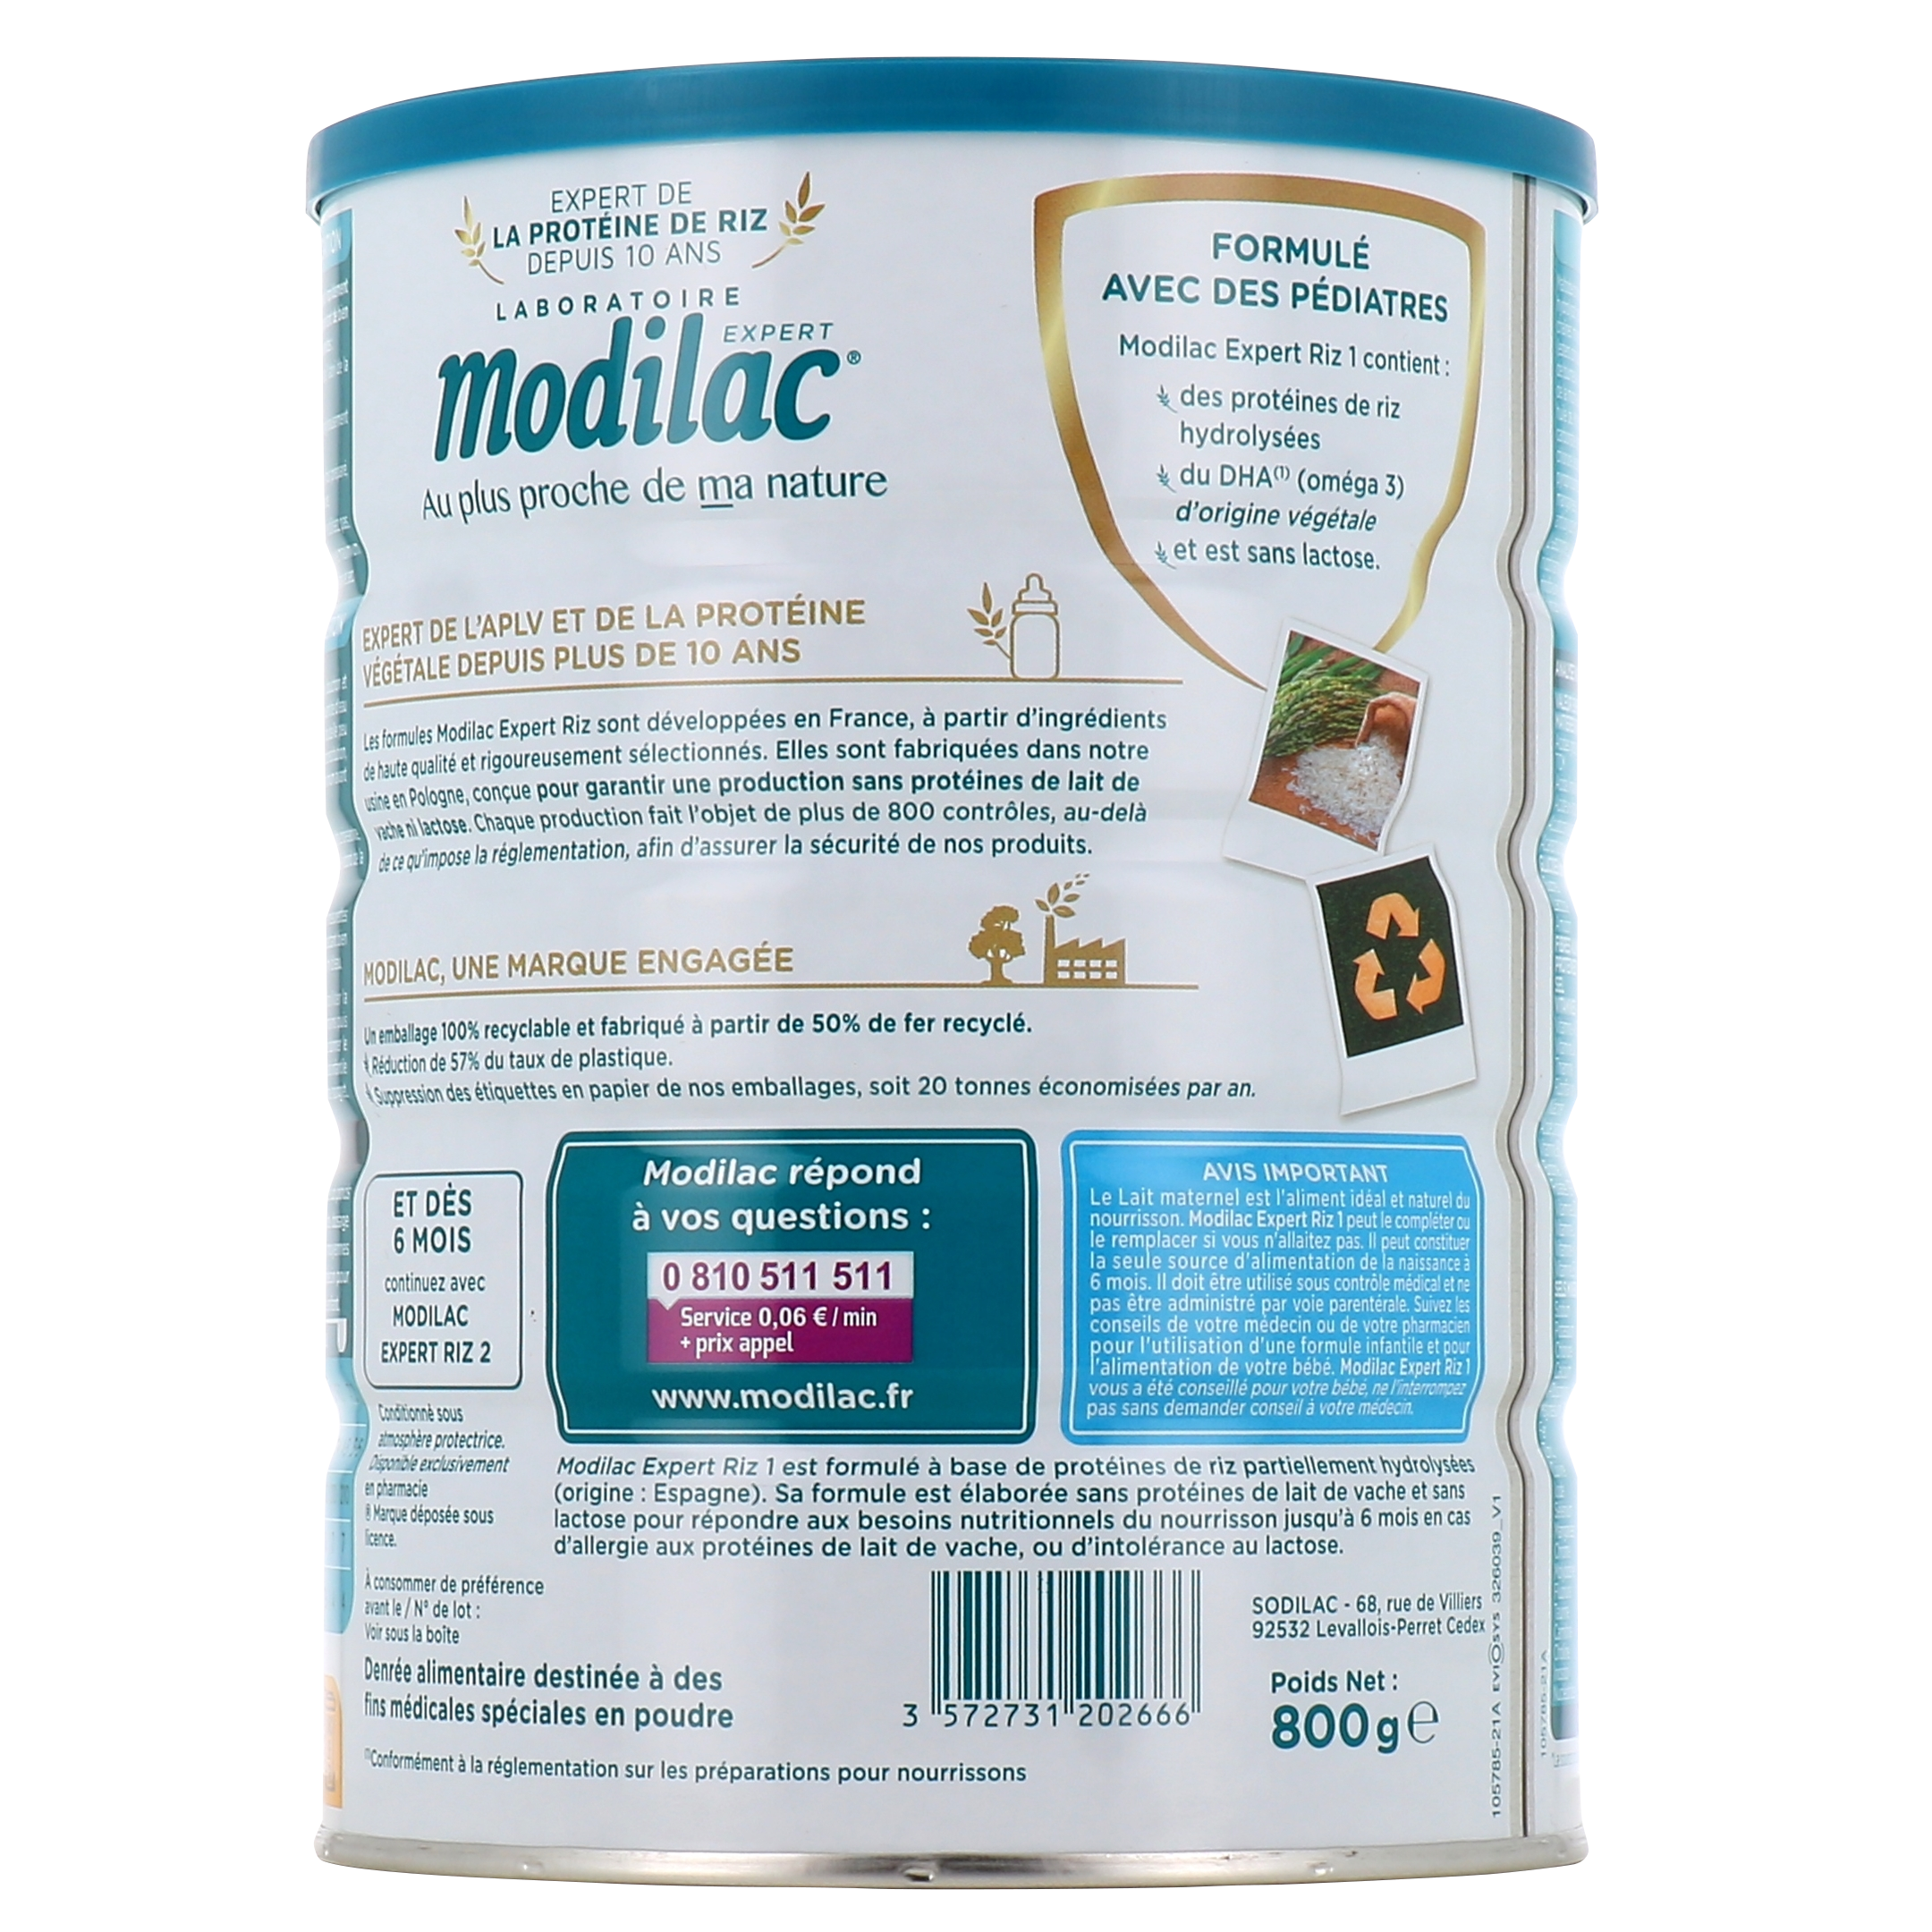 Modilac Doucéa 1 est une formule infantile élaborée pour répondre à tous  les besoins nutritionnels